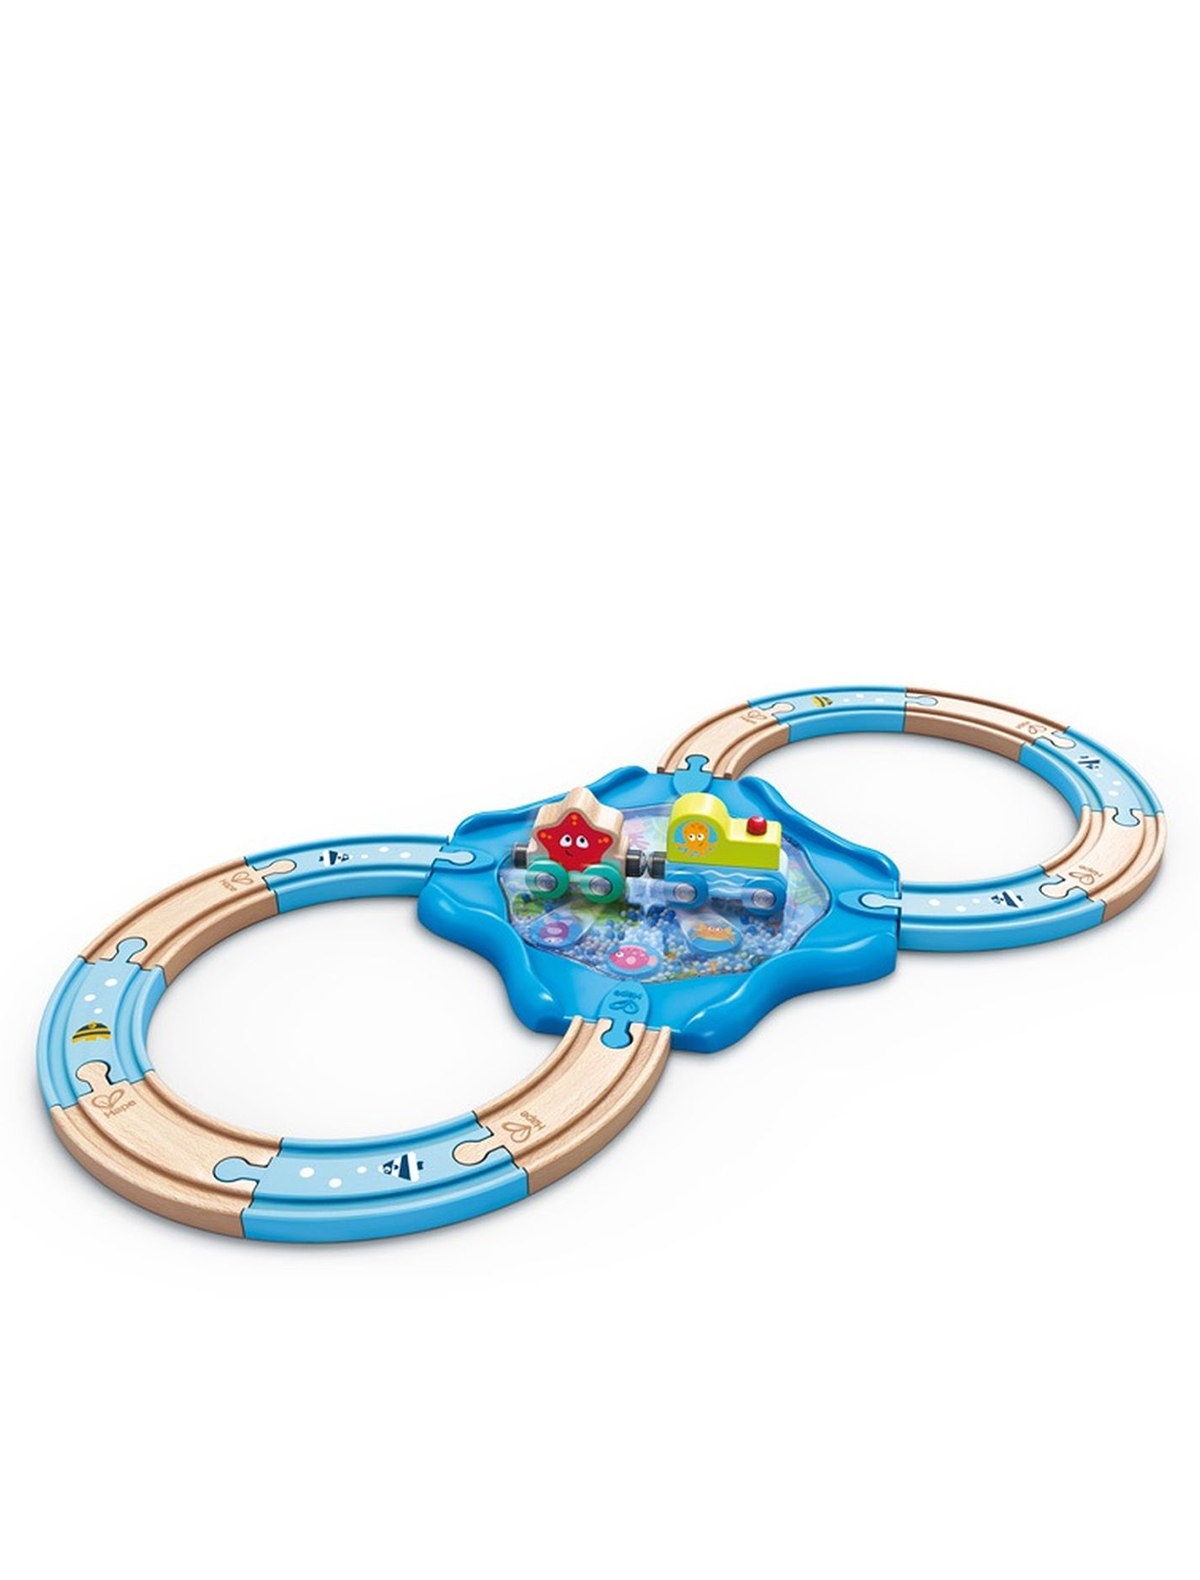 Игрушка Hape развивающая игрушка hape игрушечные весы монстрики с брошюрой примеров на сложение и состав числа